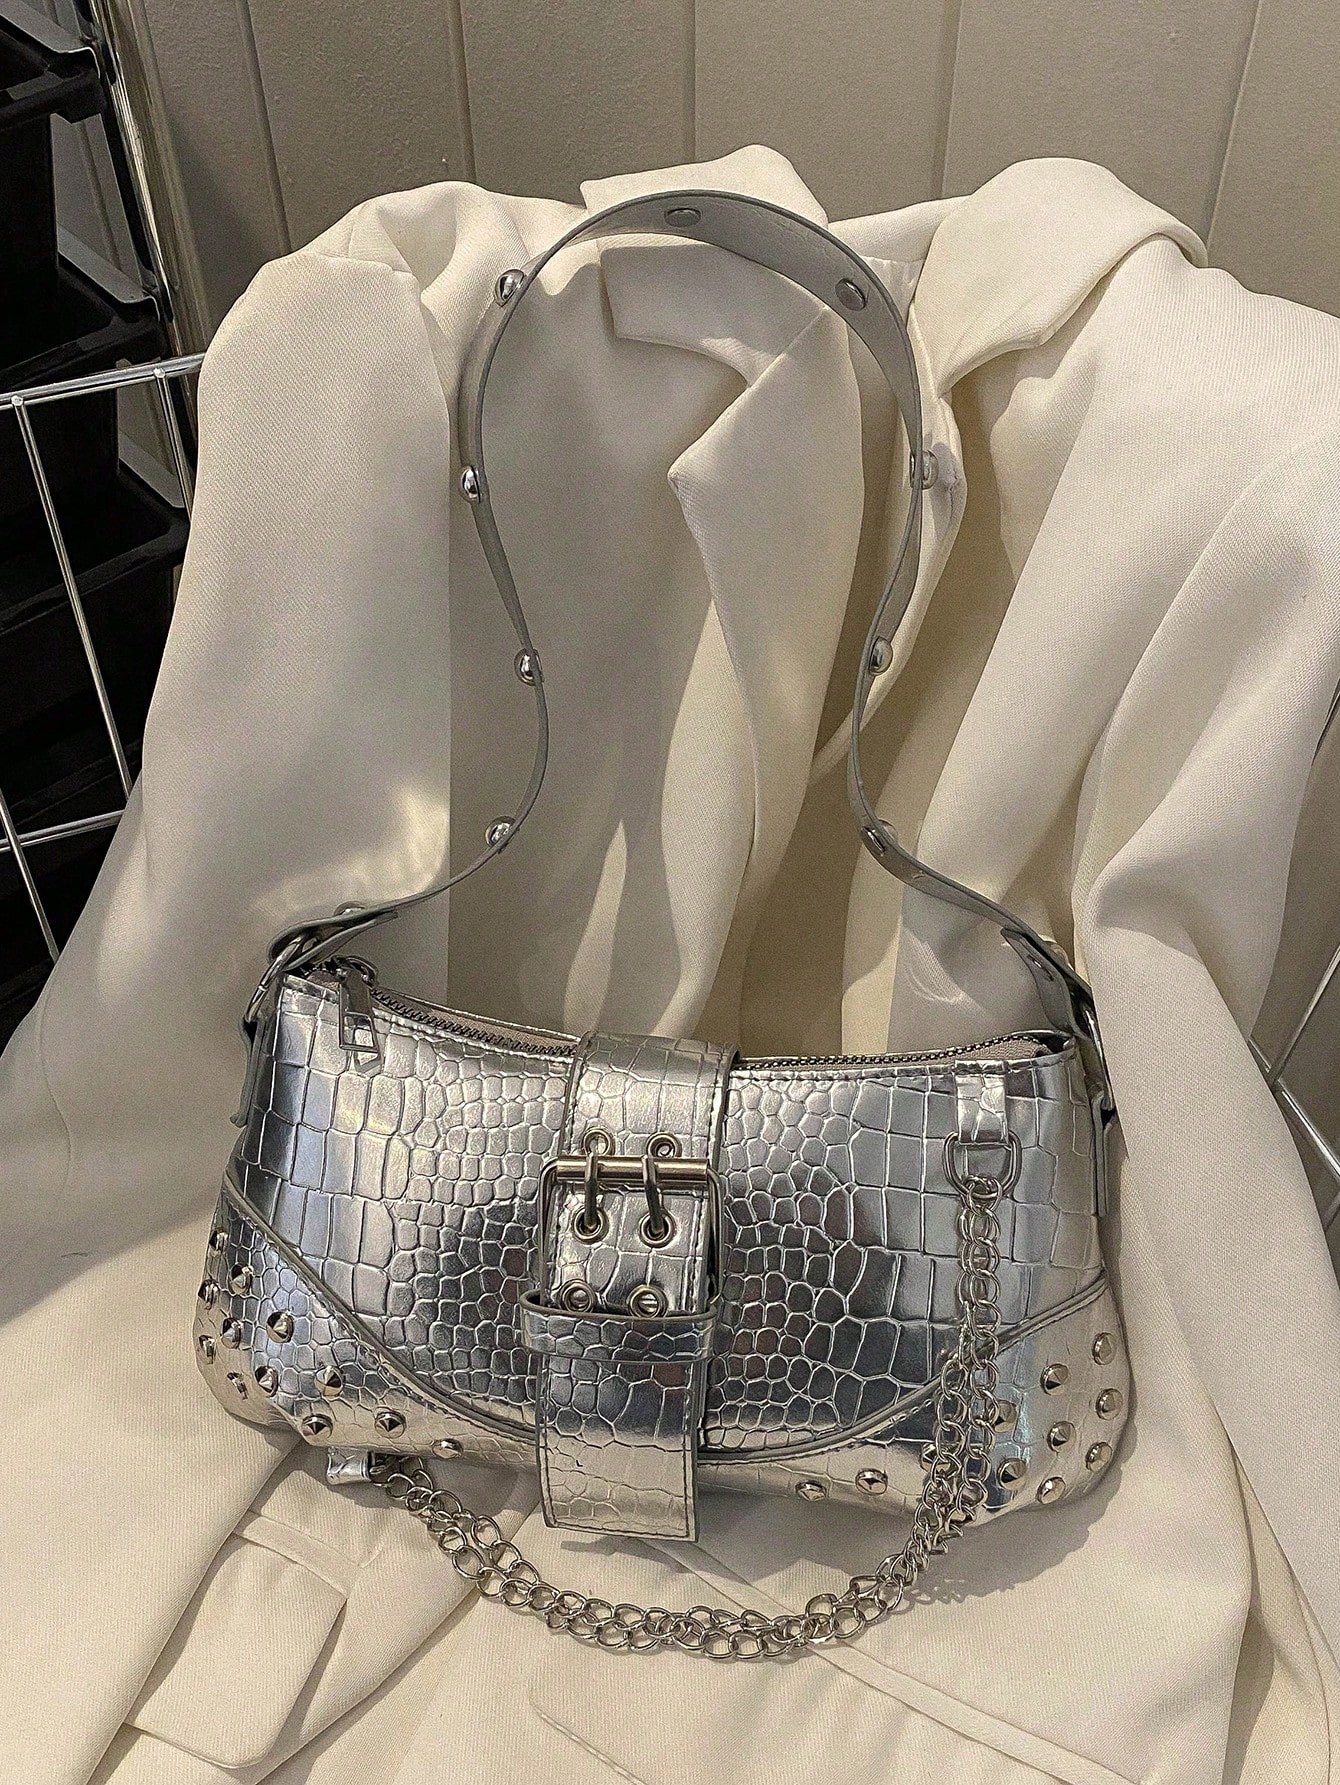 Сумка Baguette с тиснением под крокодила, серебро женская сумка через плечо из пу кожи с металлической цепочкой 120 см